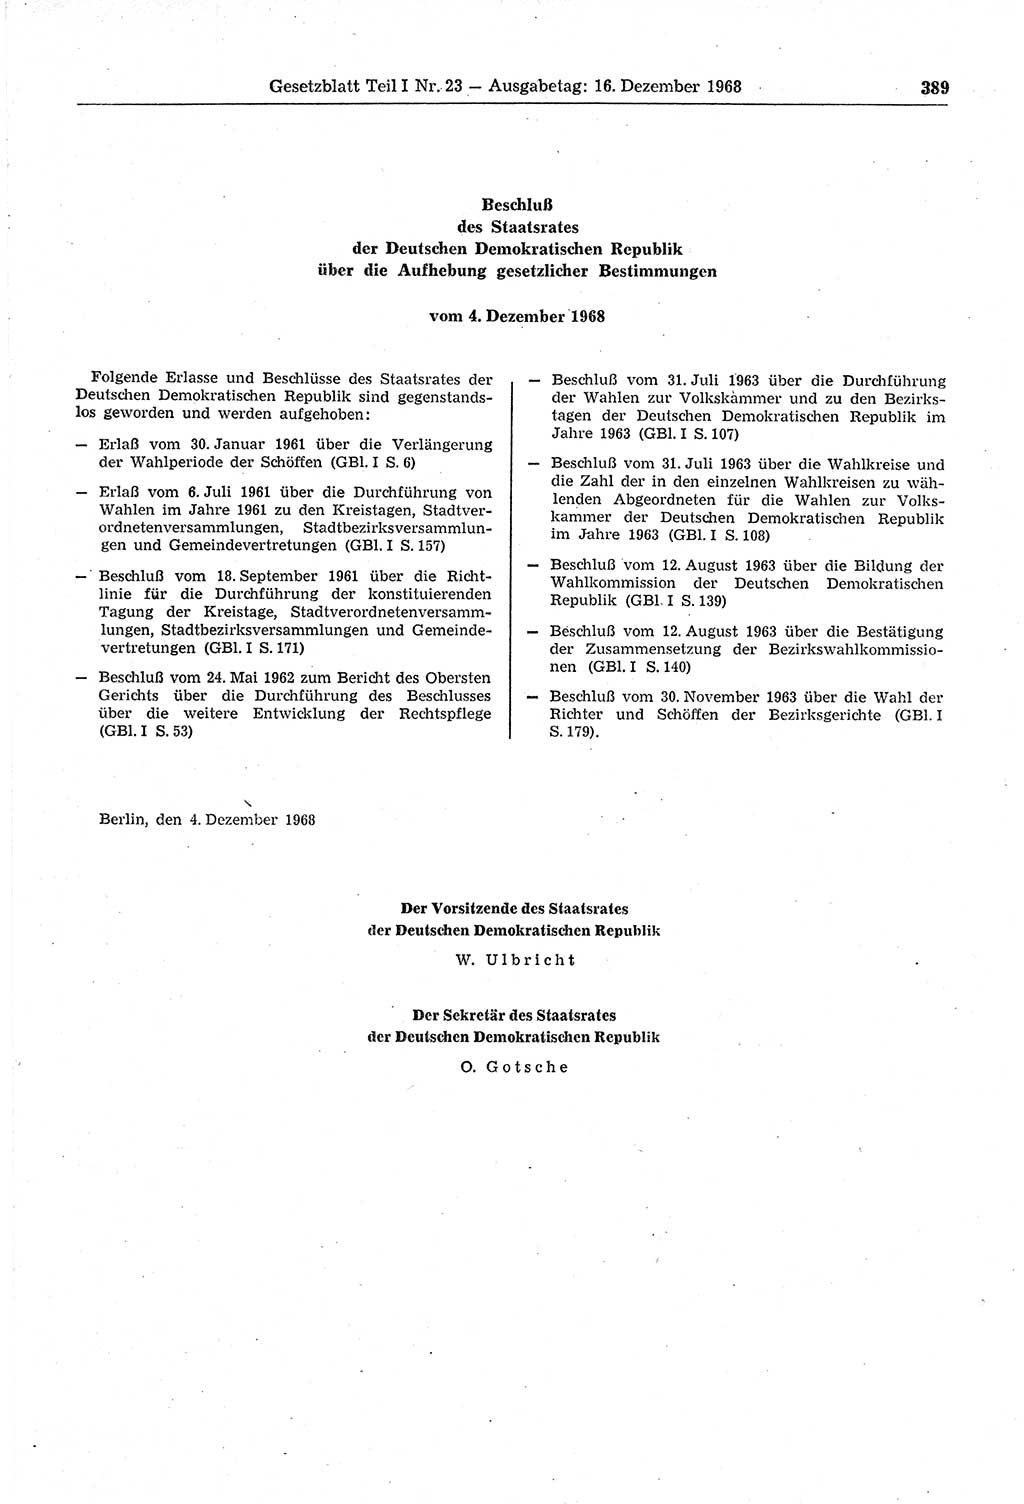 Gesetzblatt (GBl.) der Deutschen Demokratischen Republik (DDR) Teil Ⅰ 1968, Seite 389 (GBl. DDR Ⅰ 1968, S. 389)